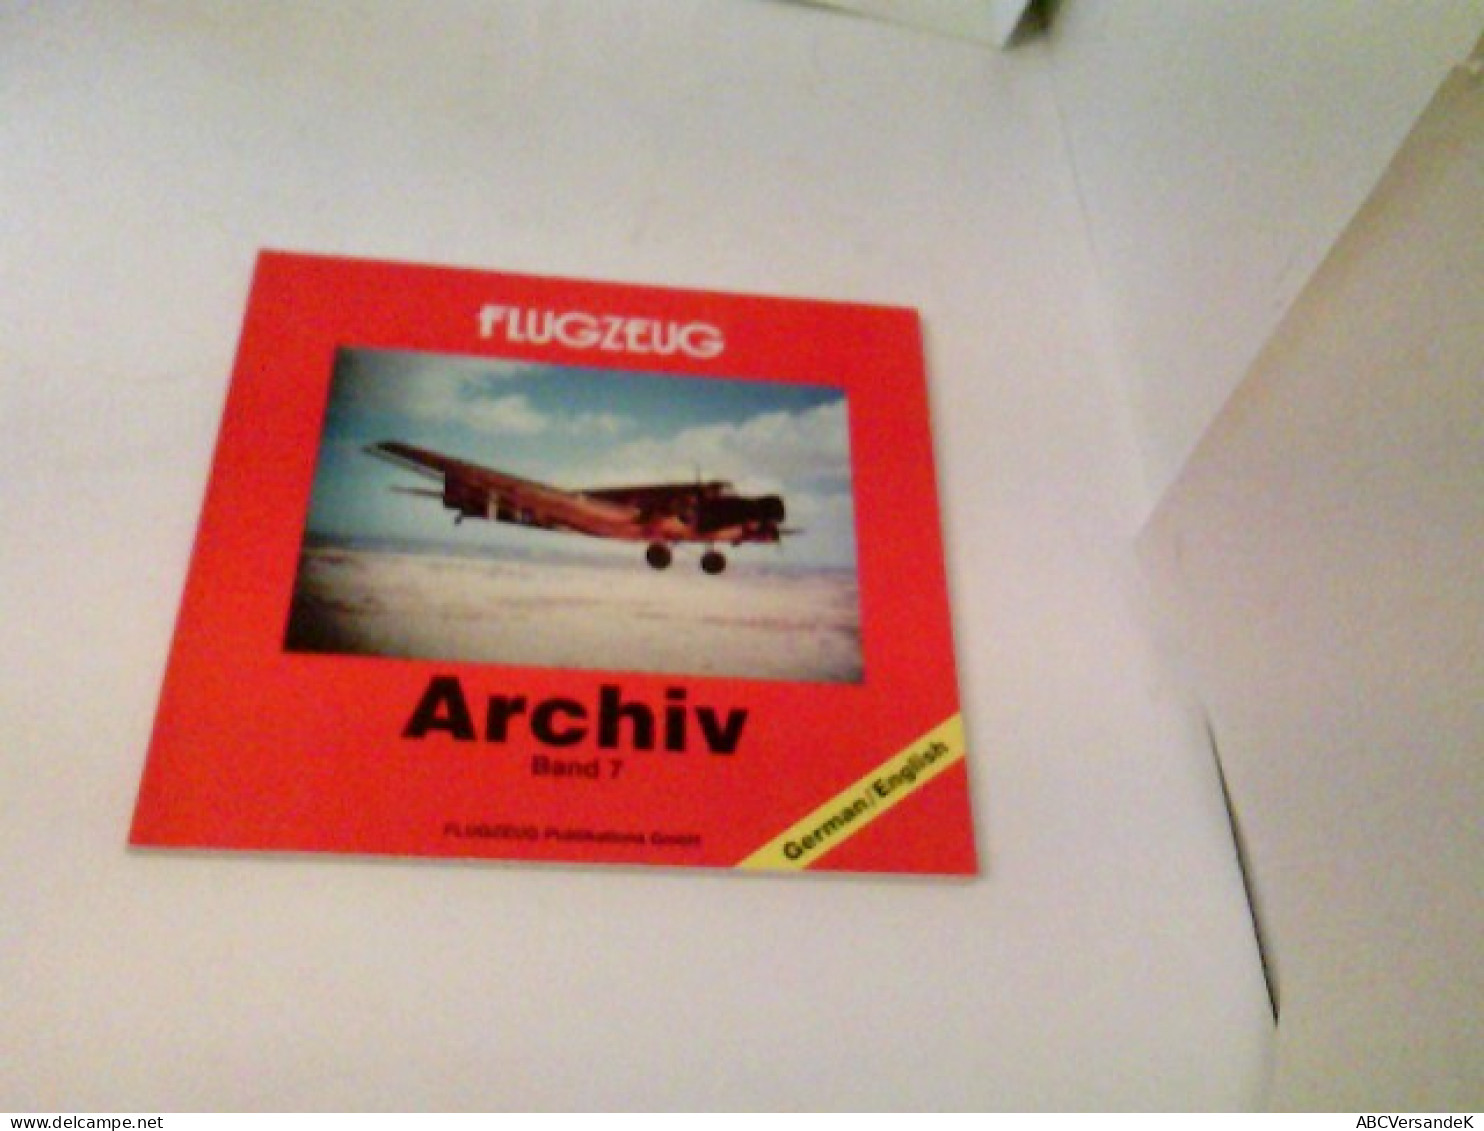 Flugzeug Archiv Band 7 - Transports